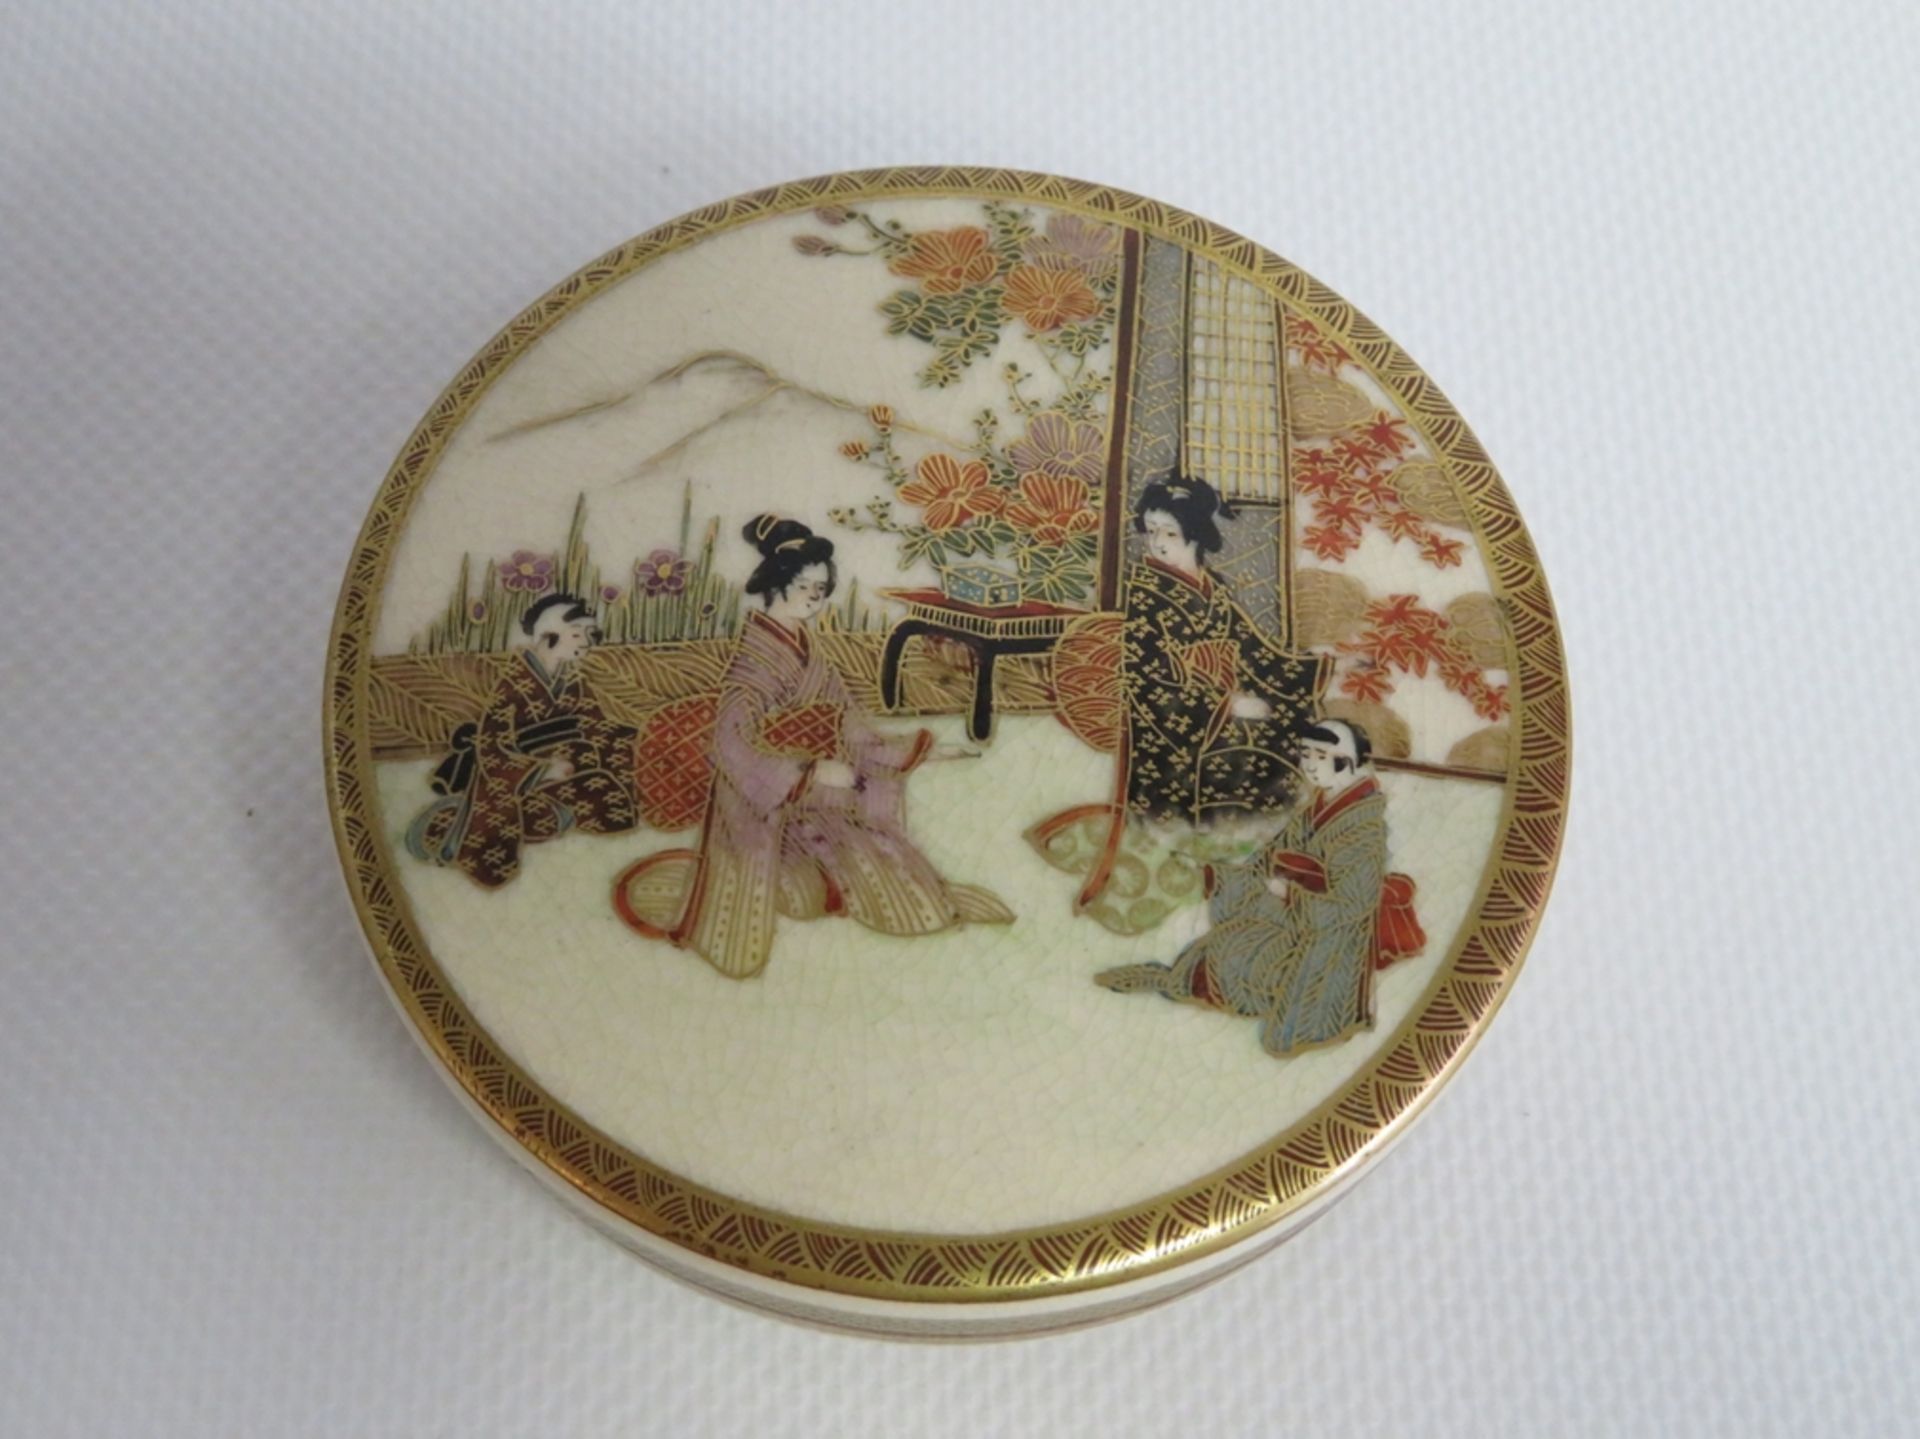 Deckeldose, Japan, Satzuma, Meiji Periode, 1868 - 1912, Porzellan mit feiner farbiger und